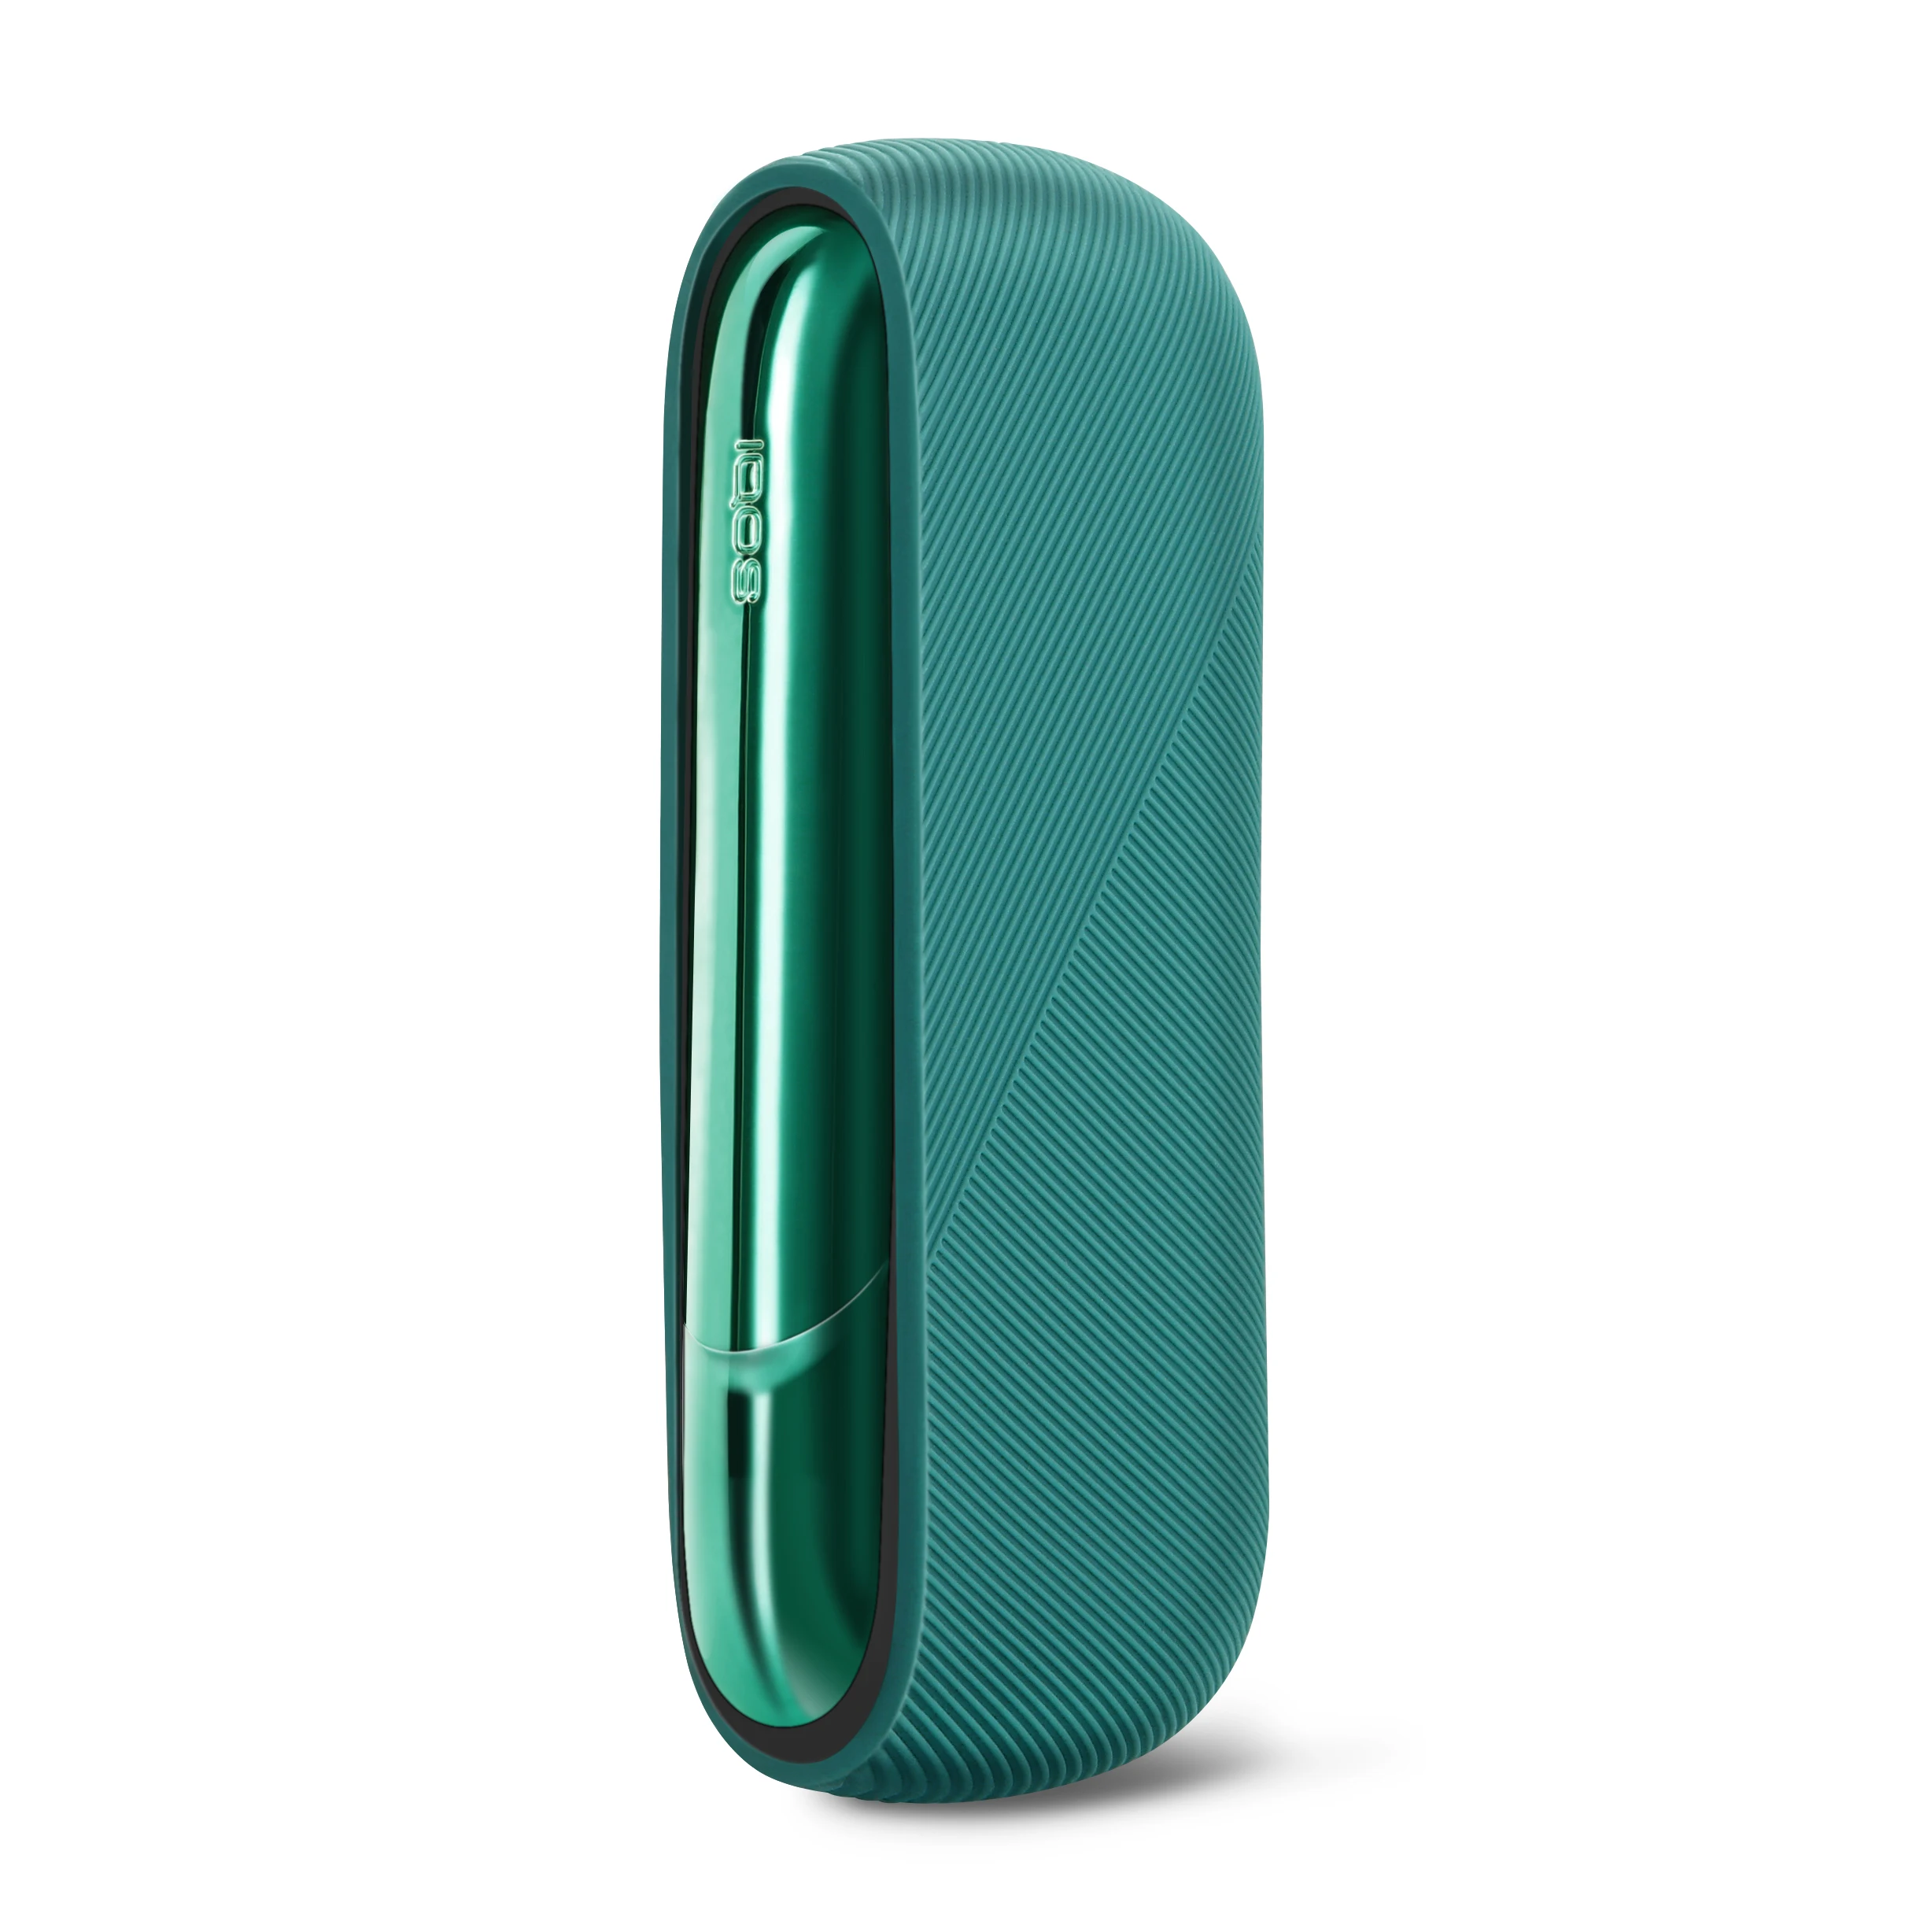 Taglia Unica, accessoires Lavande Silikon Étui de protection pour iQOS 3/3 Duo Sigarette électronique 